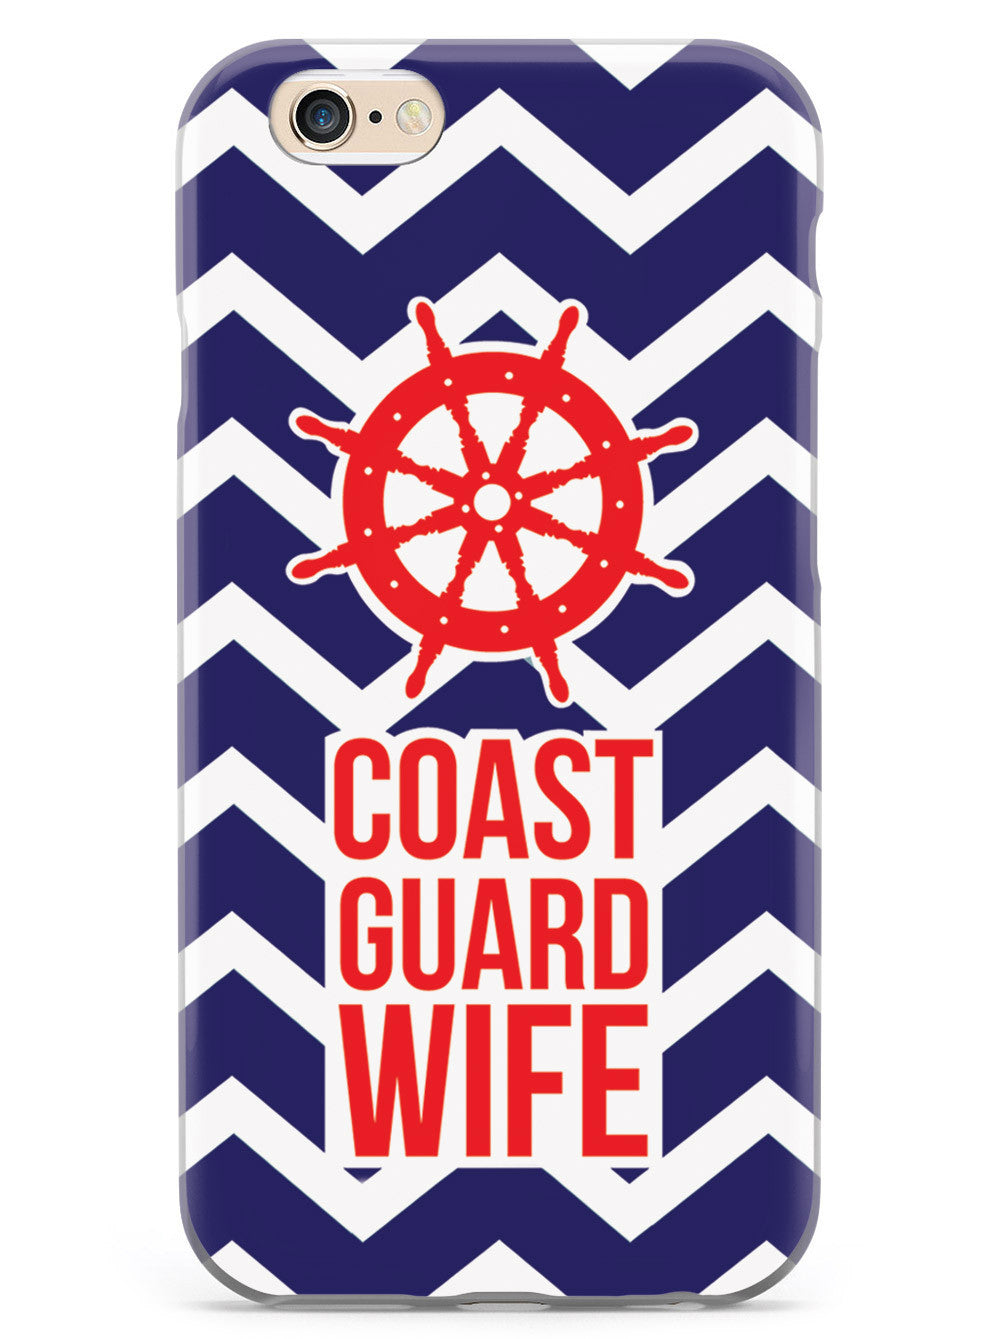 Coast Guard Wife Military Case